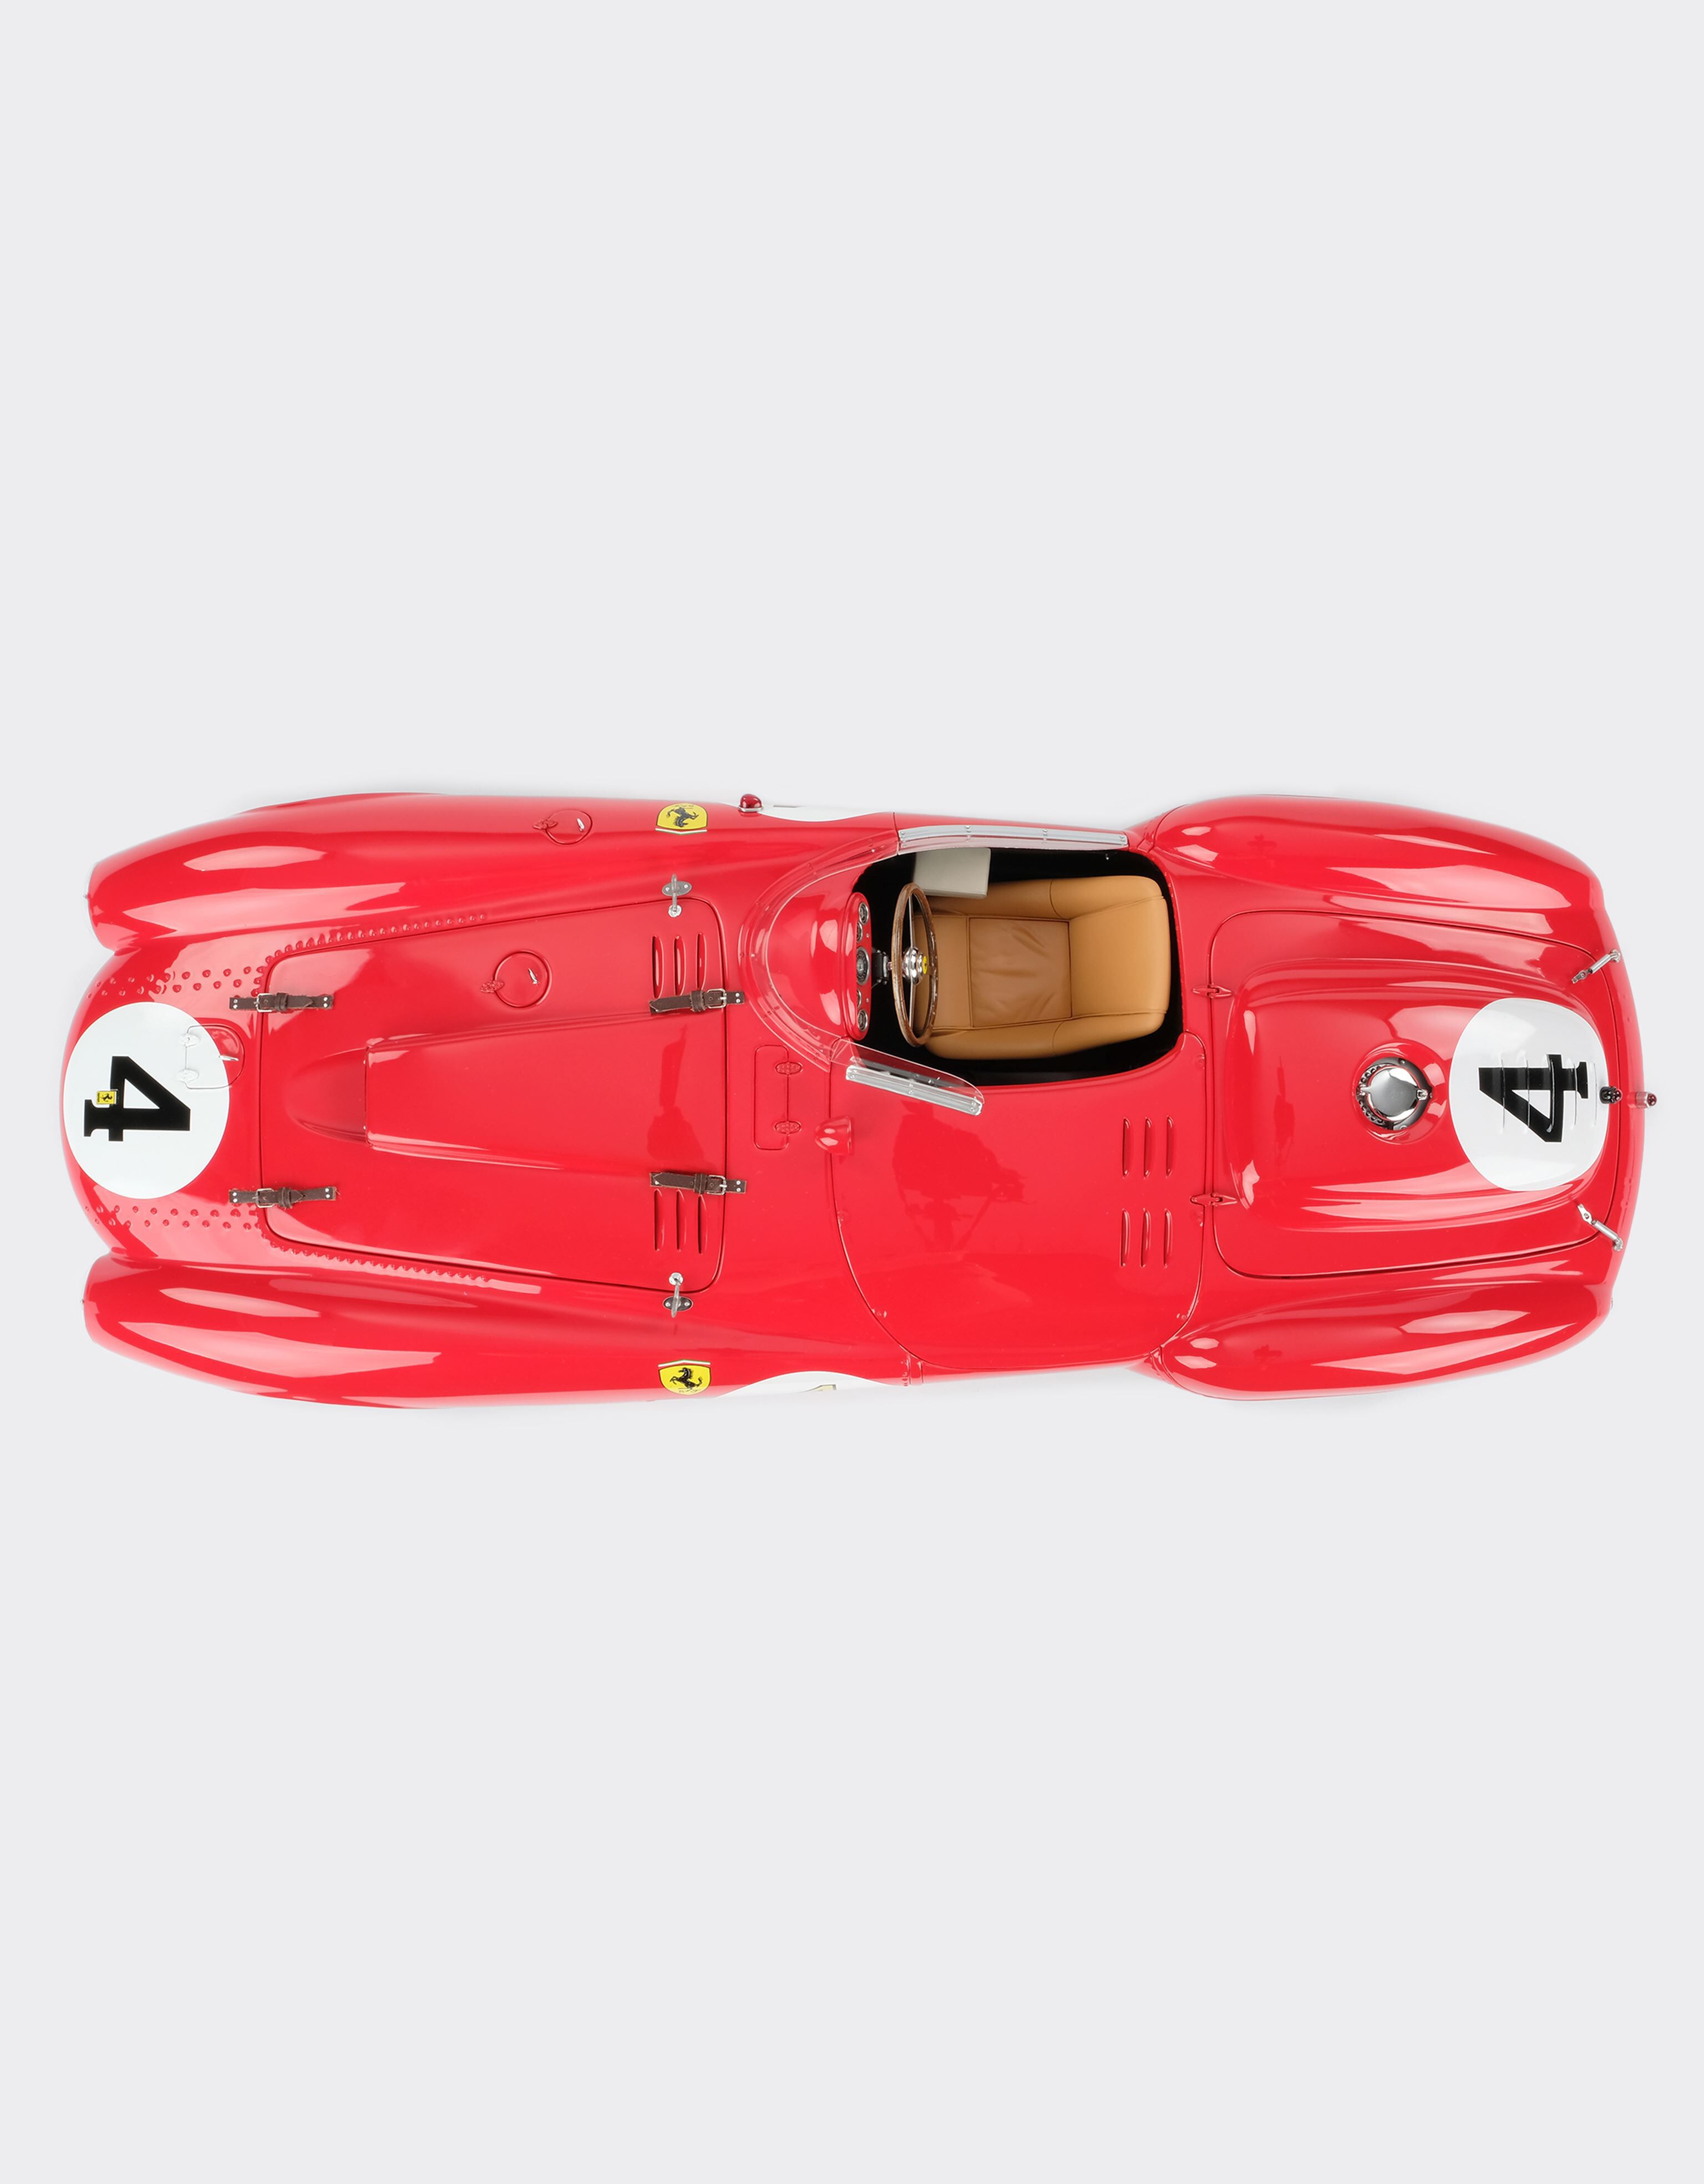 Ferrari Modell Ferrari 375 Plus 1st Le Mans im Maßstab 1:8 Rot L5241f